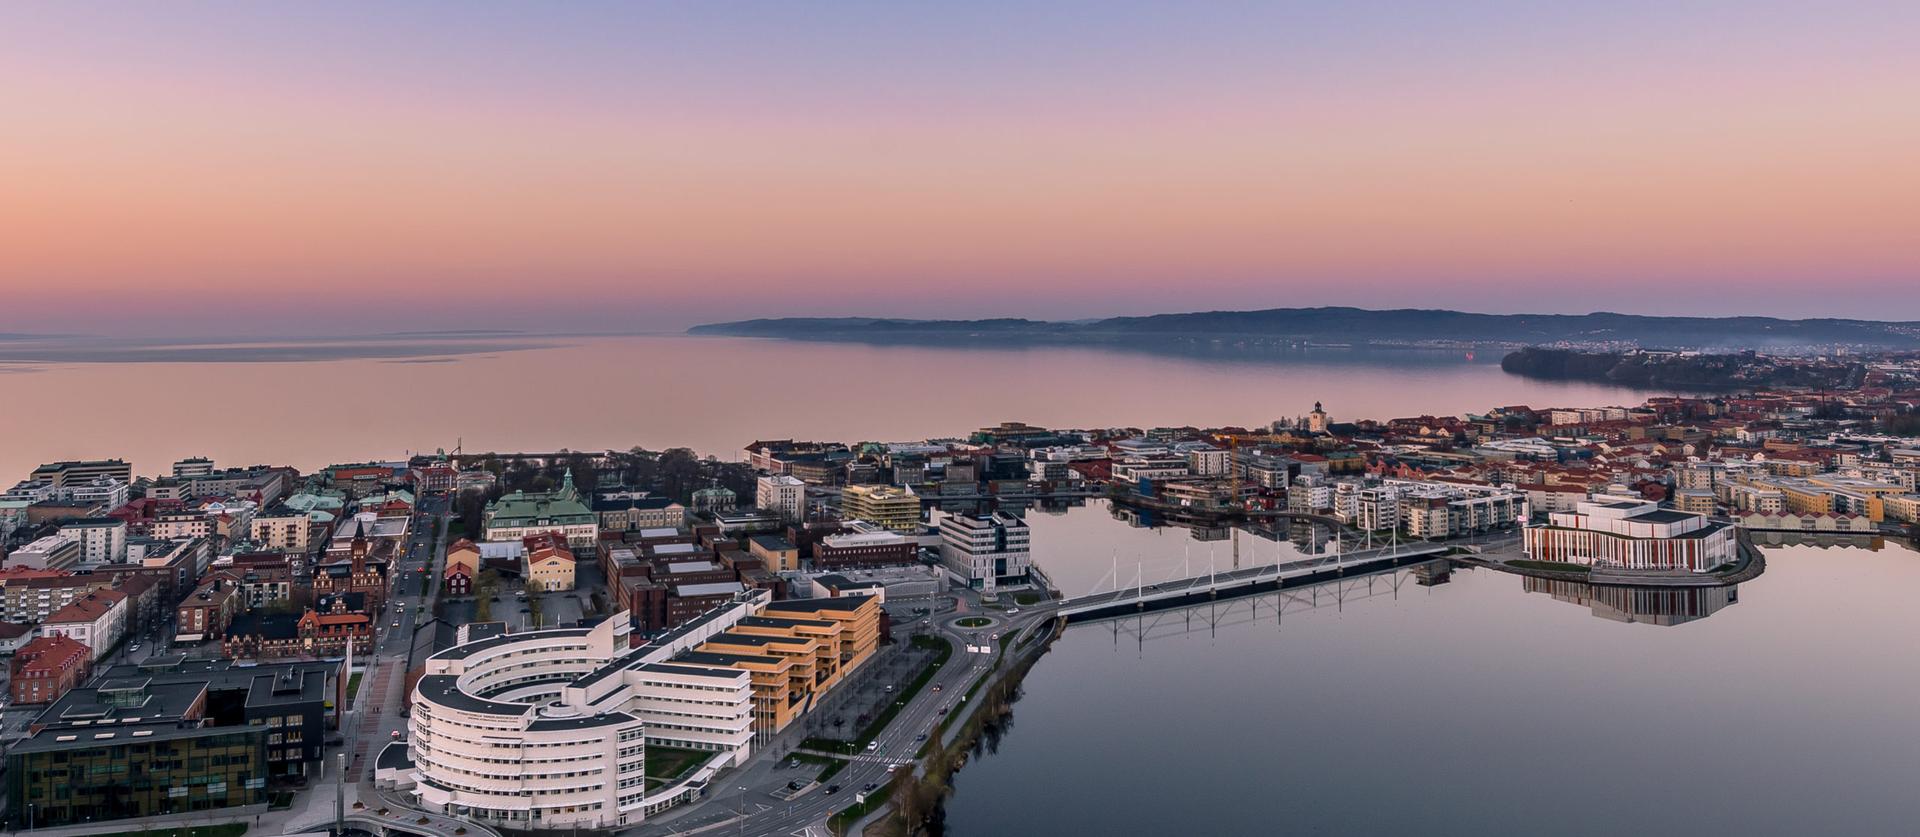 Interesta erbjuder ombildningar från hyresrätter till bostadsrätter i Jönköping